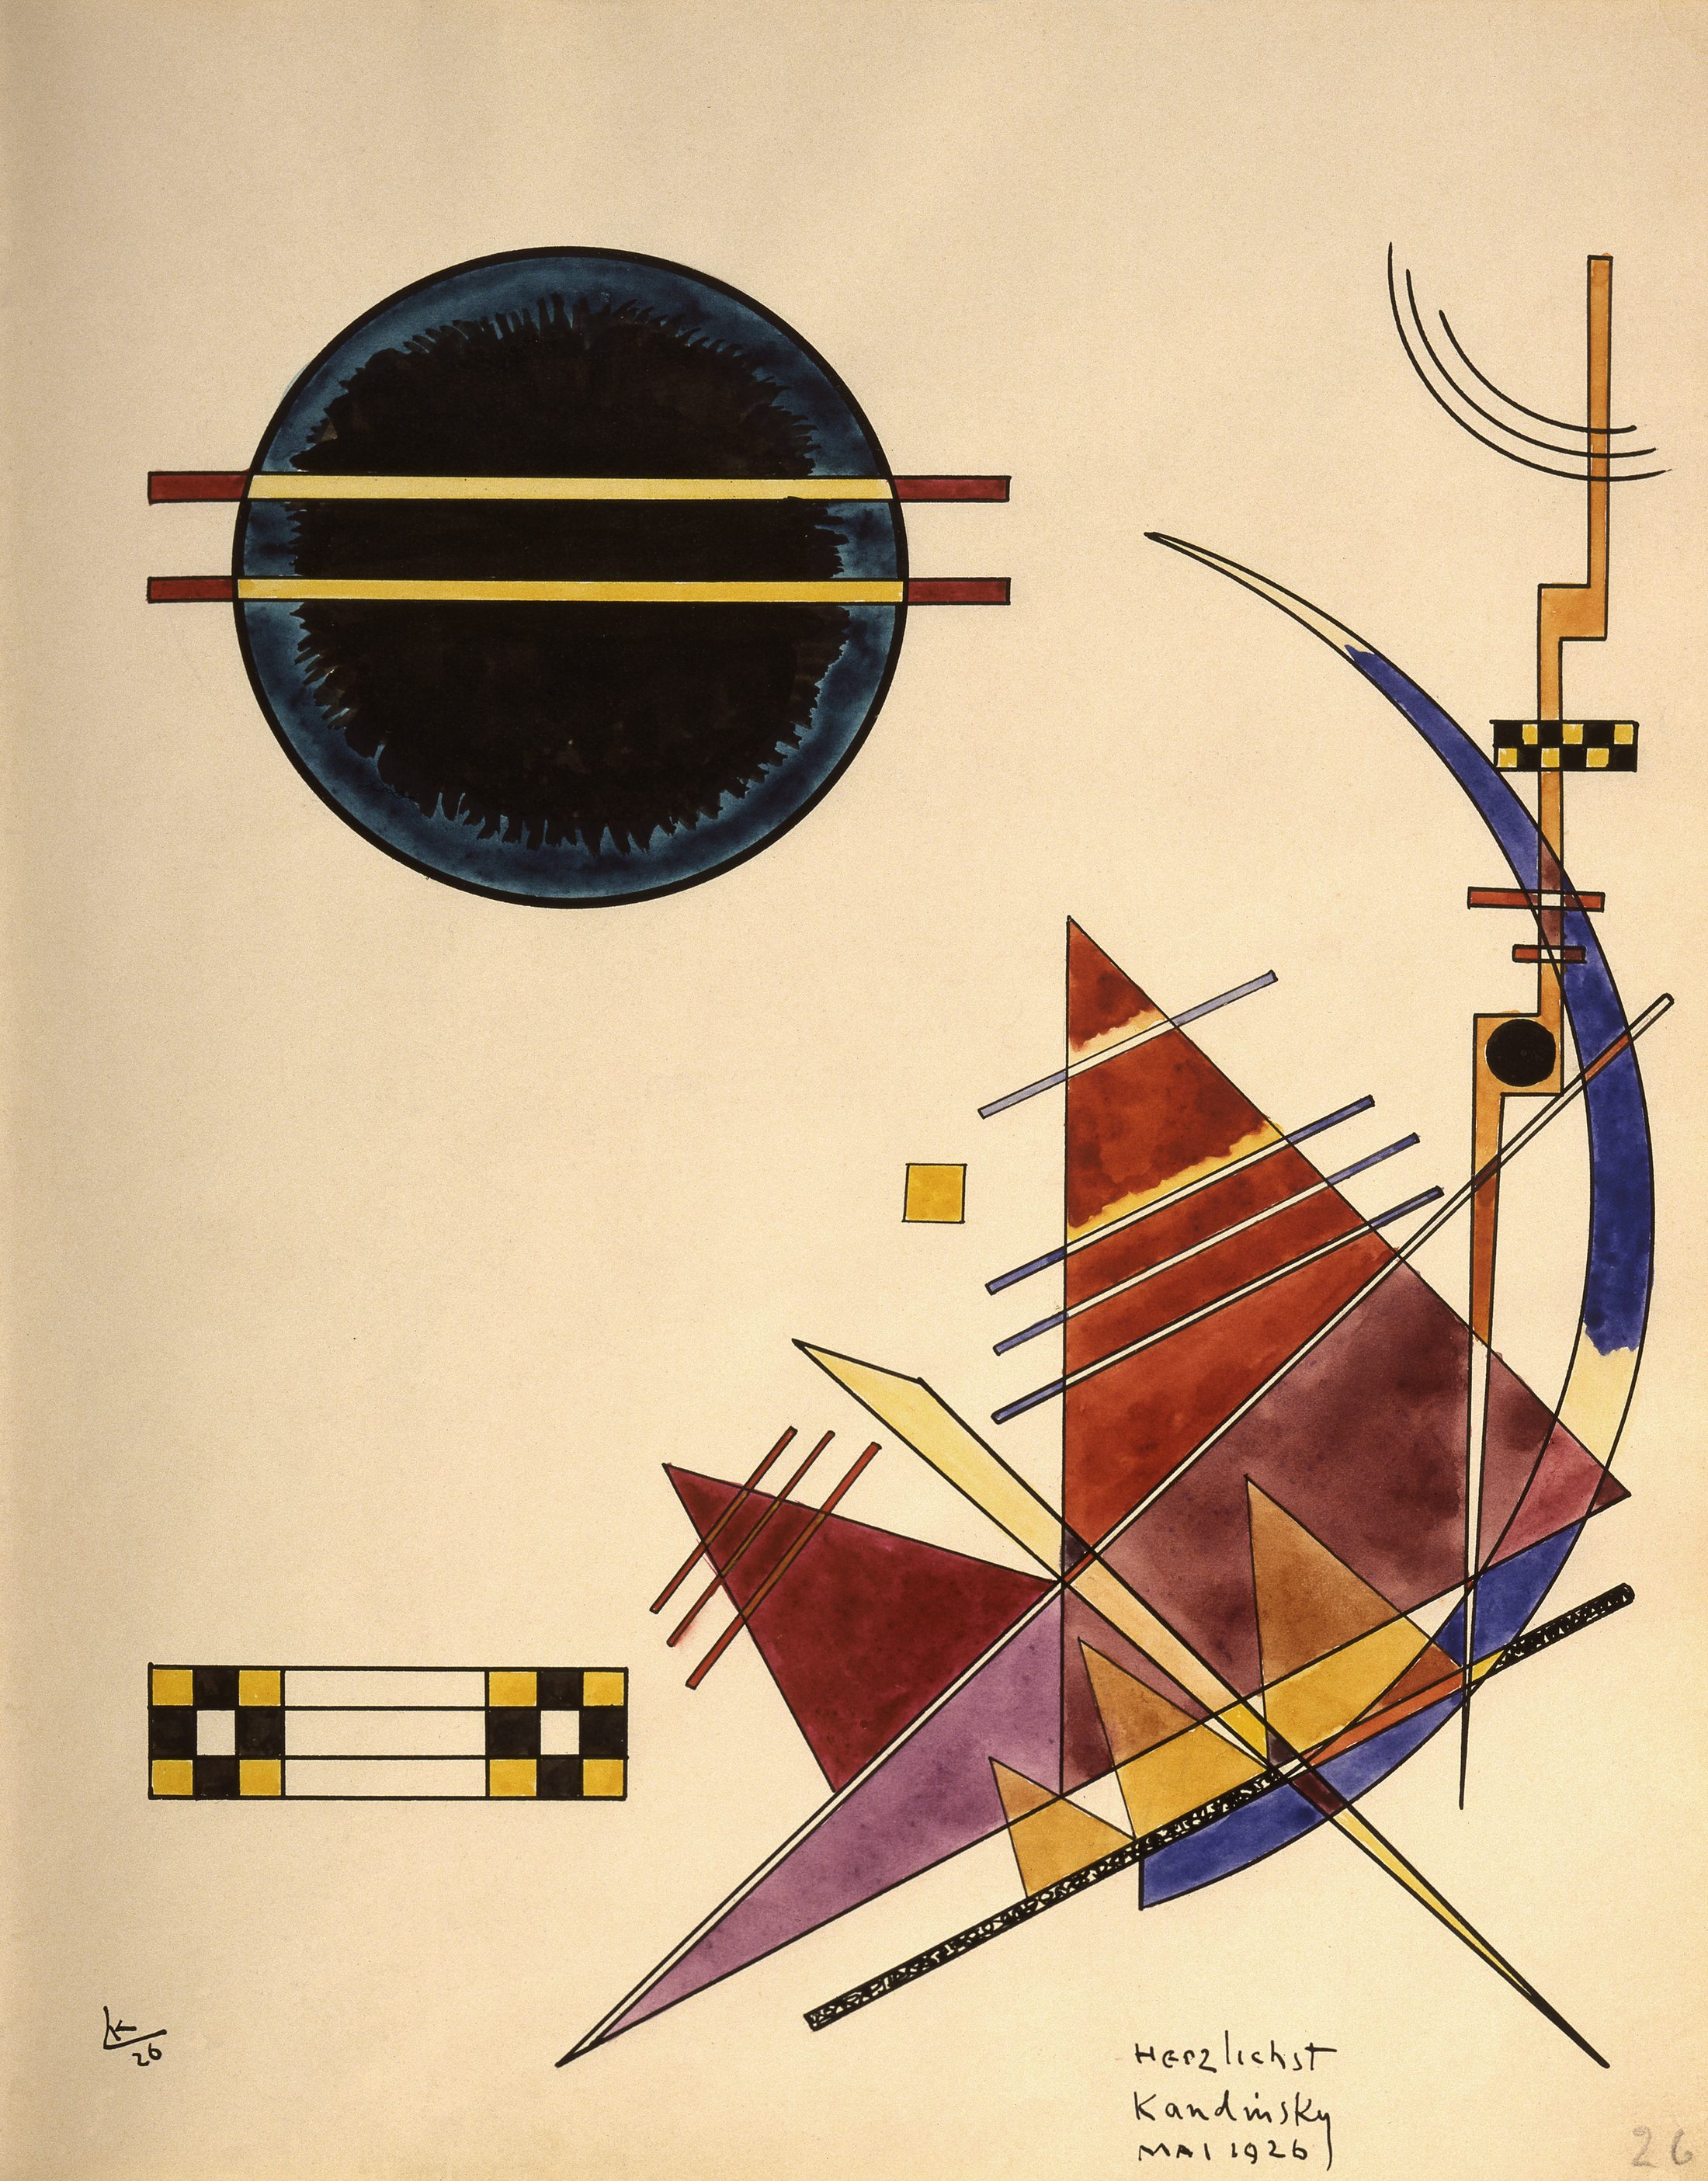 Zeichnung Wassily Kandinskys mit bunten geometrischen Figuren (Wird bei Klick vergrößert)